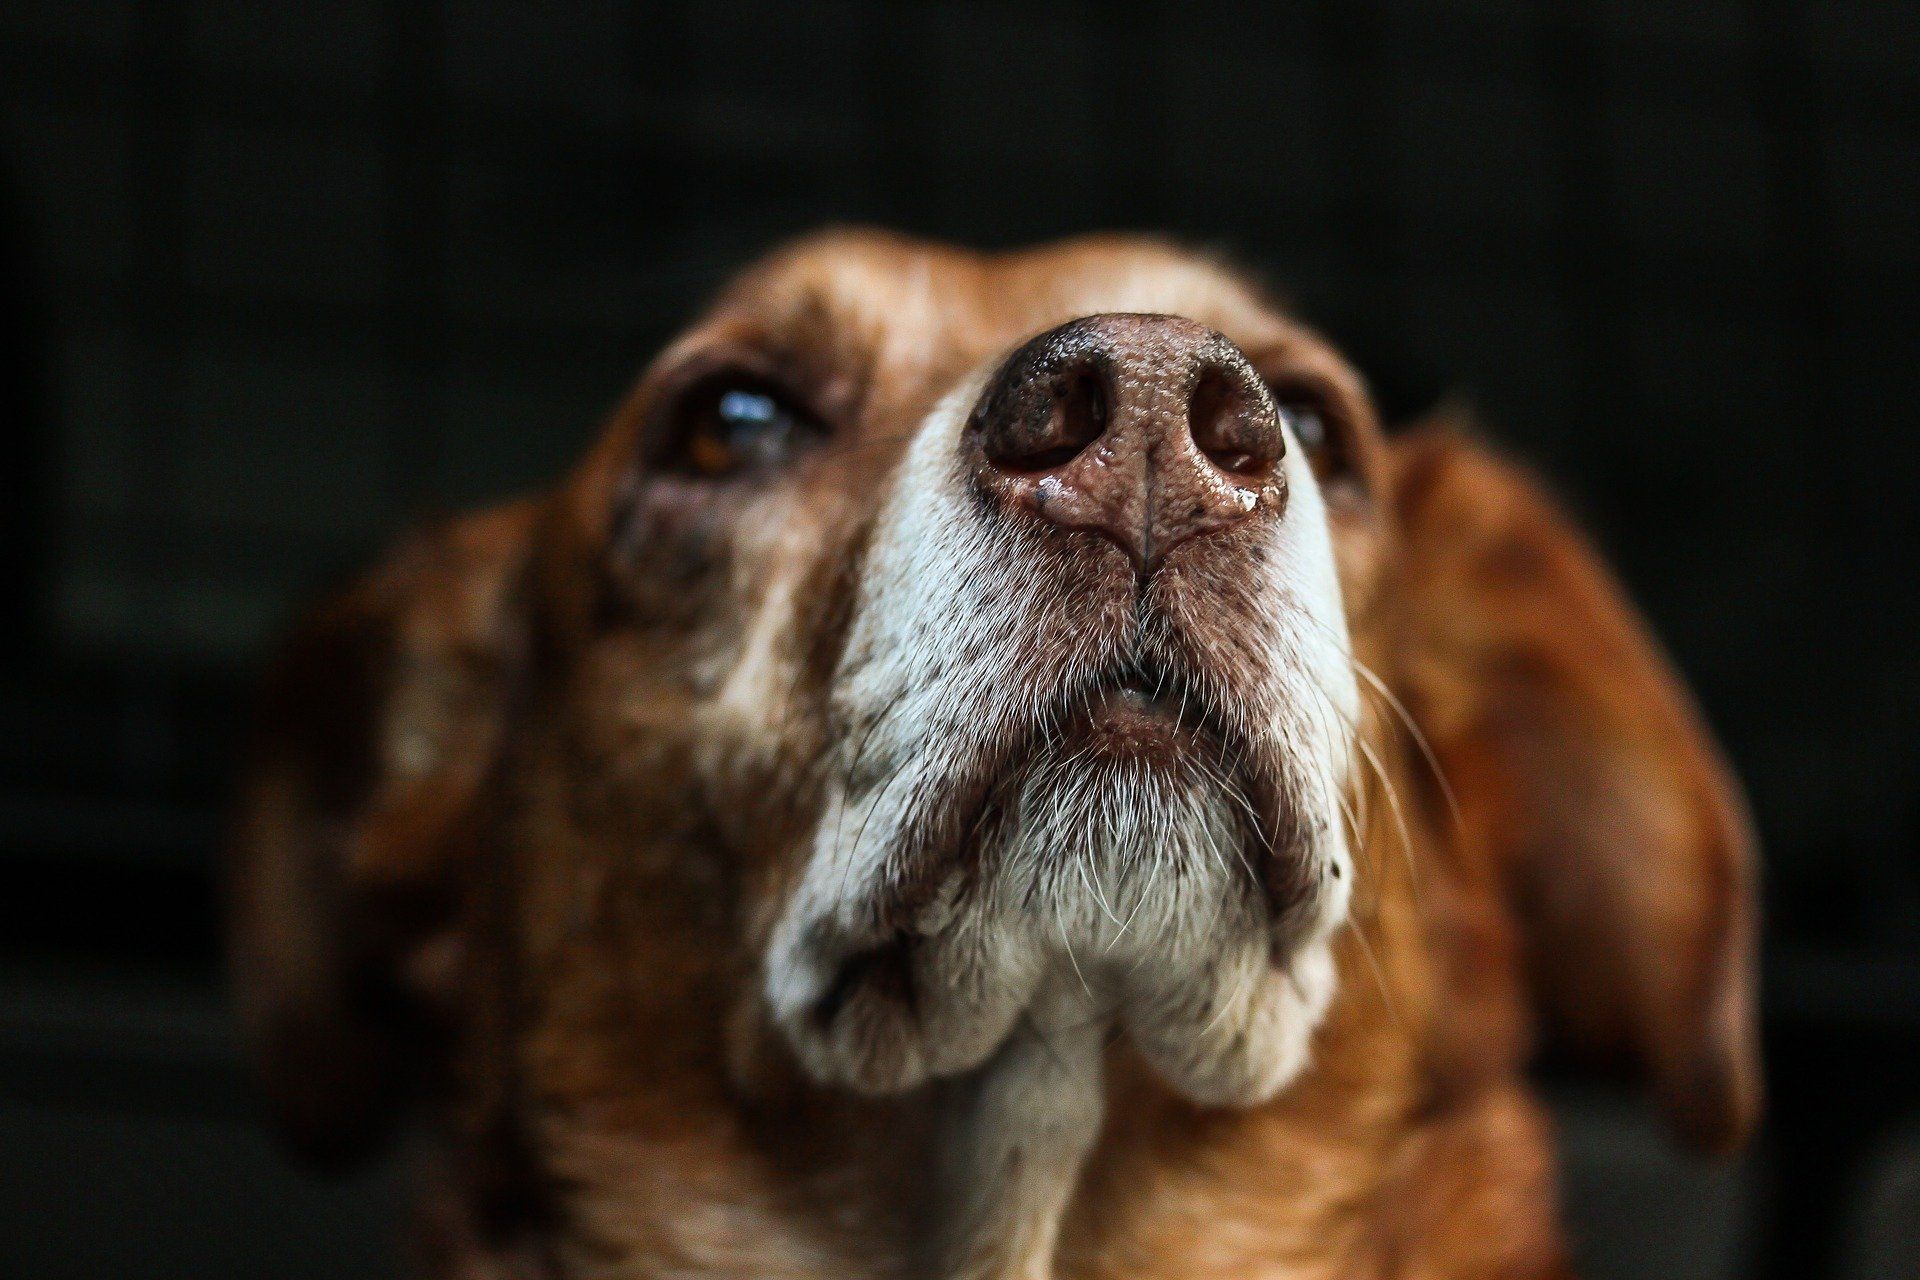 Kopf eines älteren Beagles mit weißer Schnauze. Es ist ein älterer Hund.